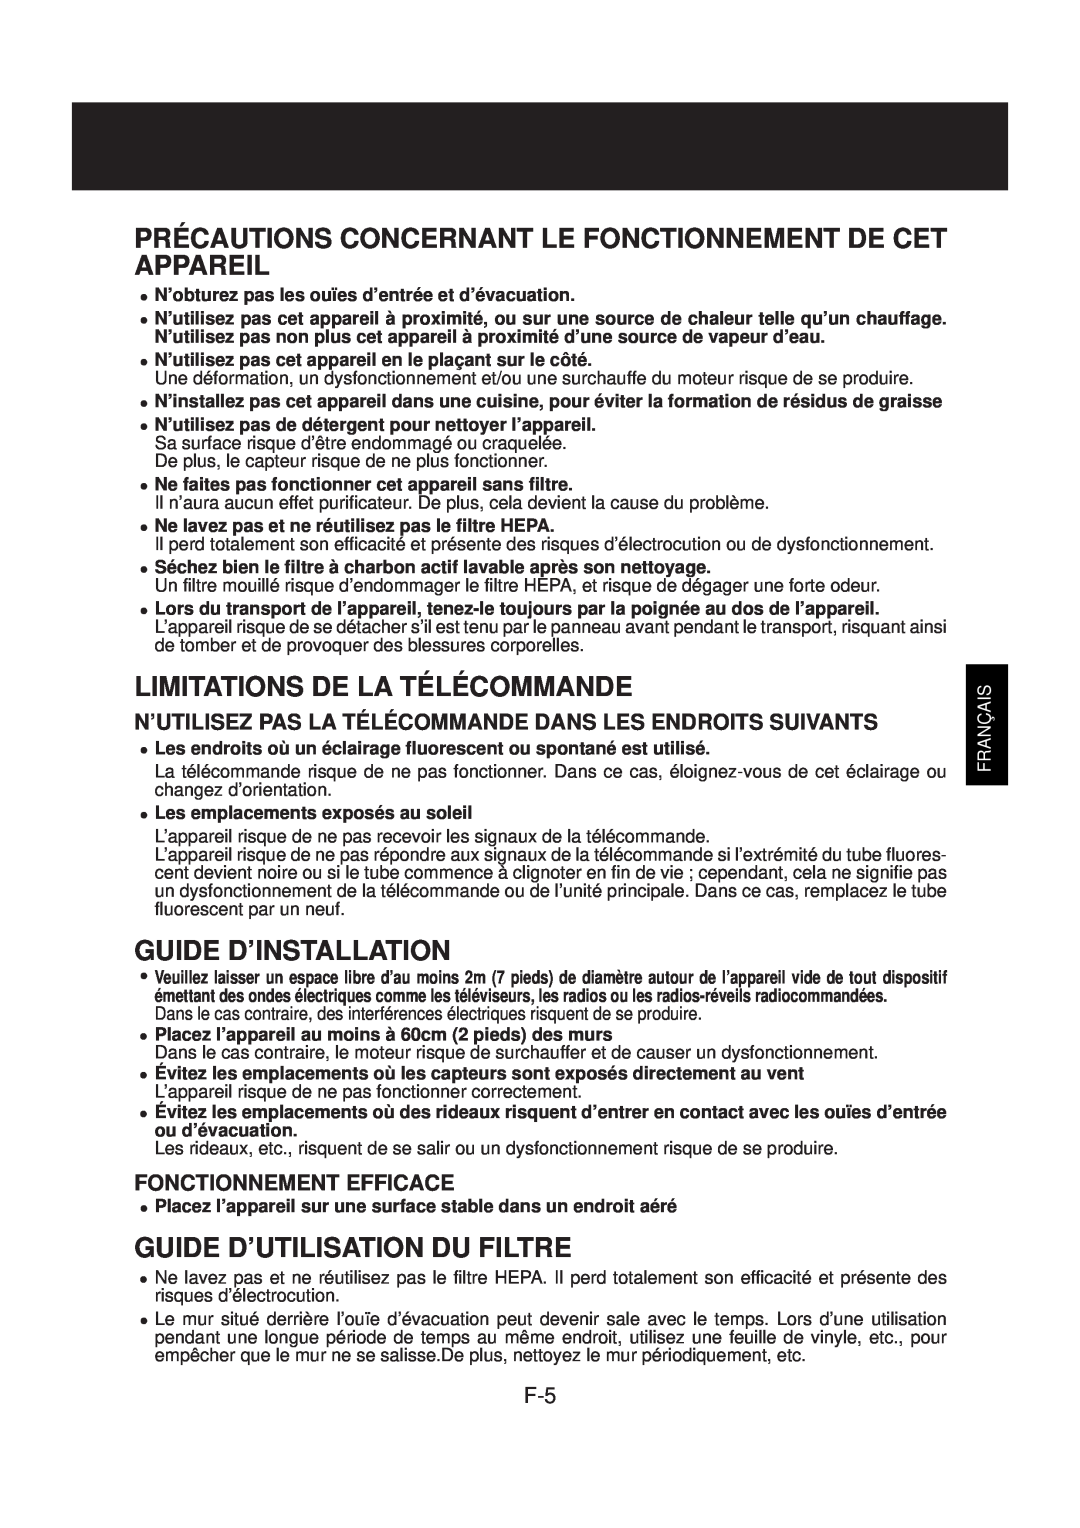 Sharp FP-N40CX Limitations De La Télécommande, Guide D’Installation, Guide D’Utilisation Du Filtre, Français 